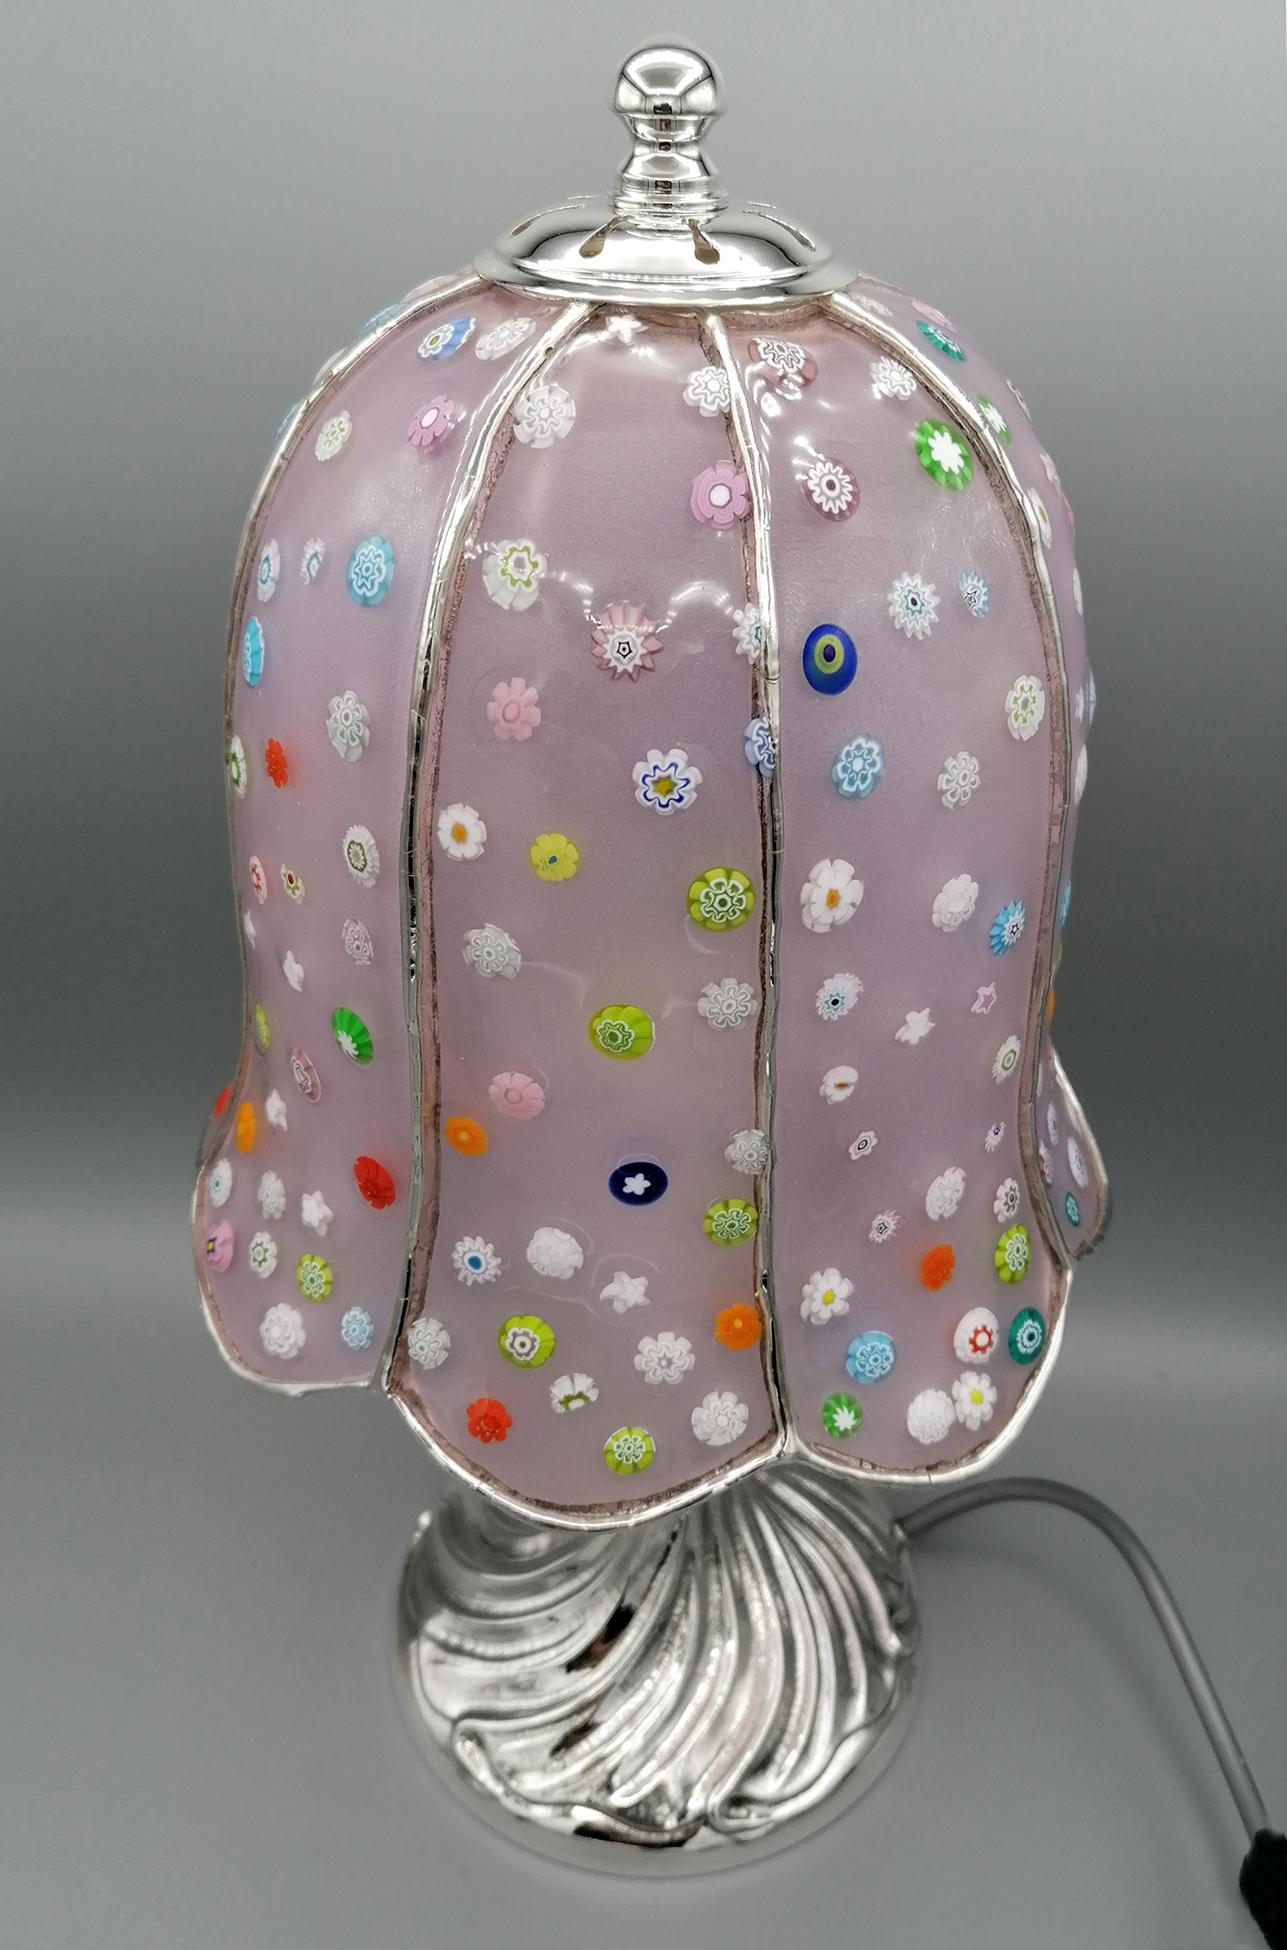 Lampe mit Stiel aus massivem Sterlingsilber, von Hand geprägt und gemeißelt, mit einem Torchon-Motiv.

Der Hut wurde in Venedig auf der Insel Murano mit der 